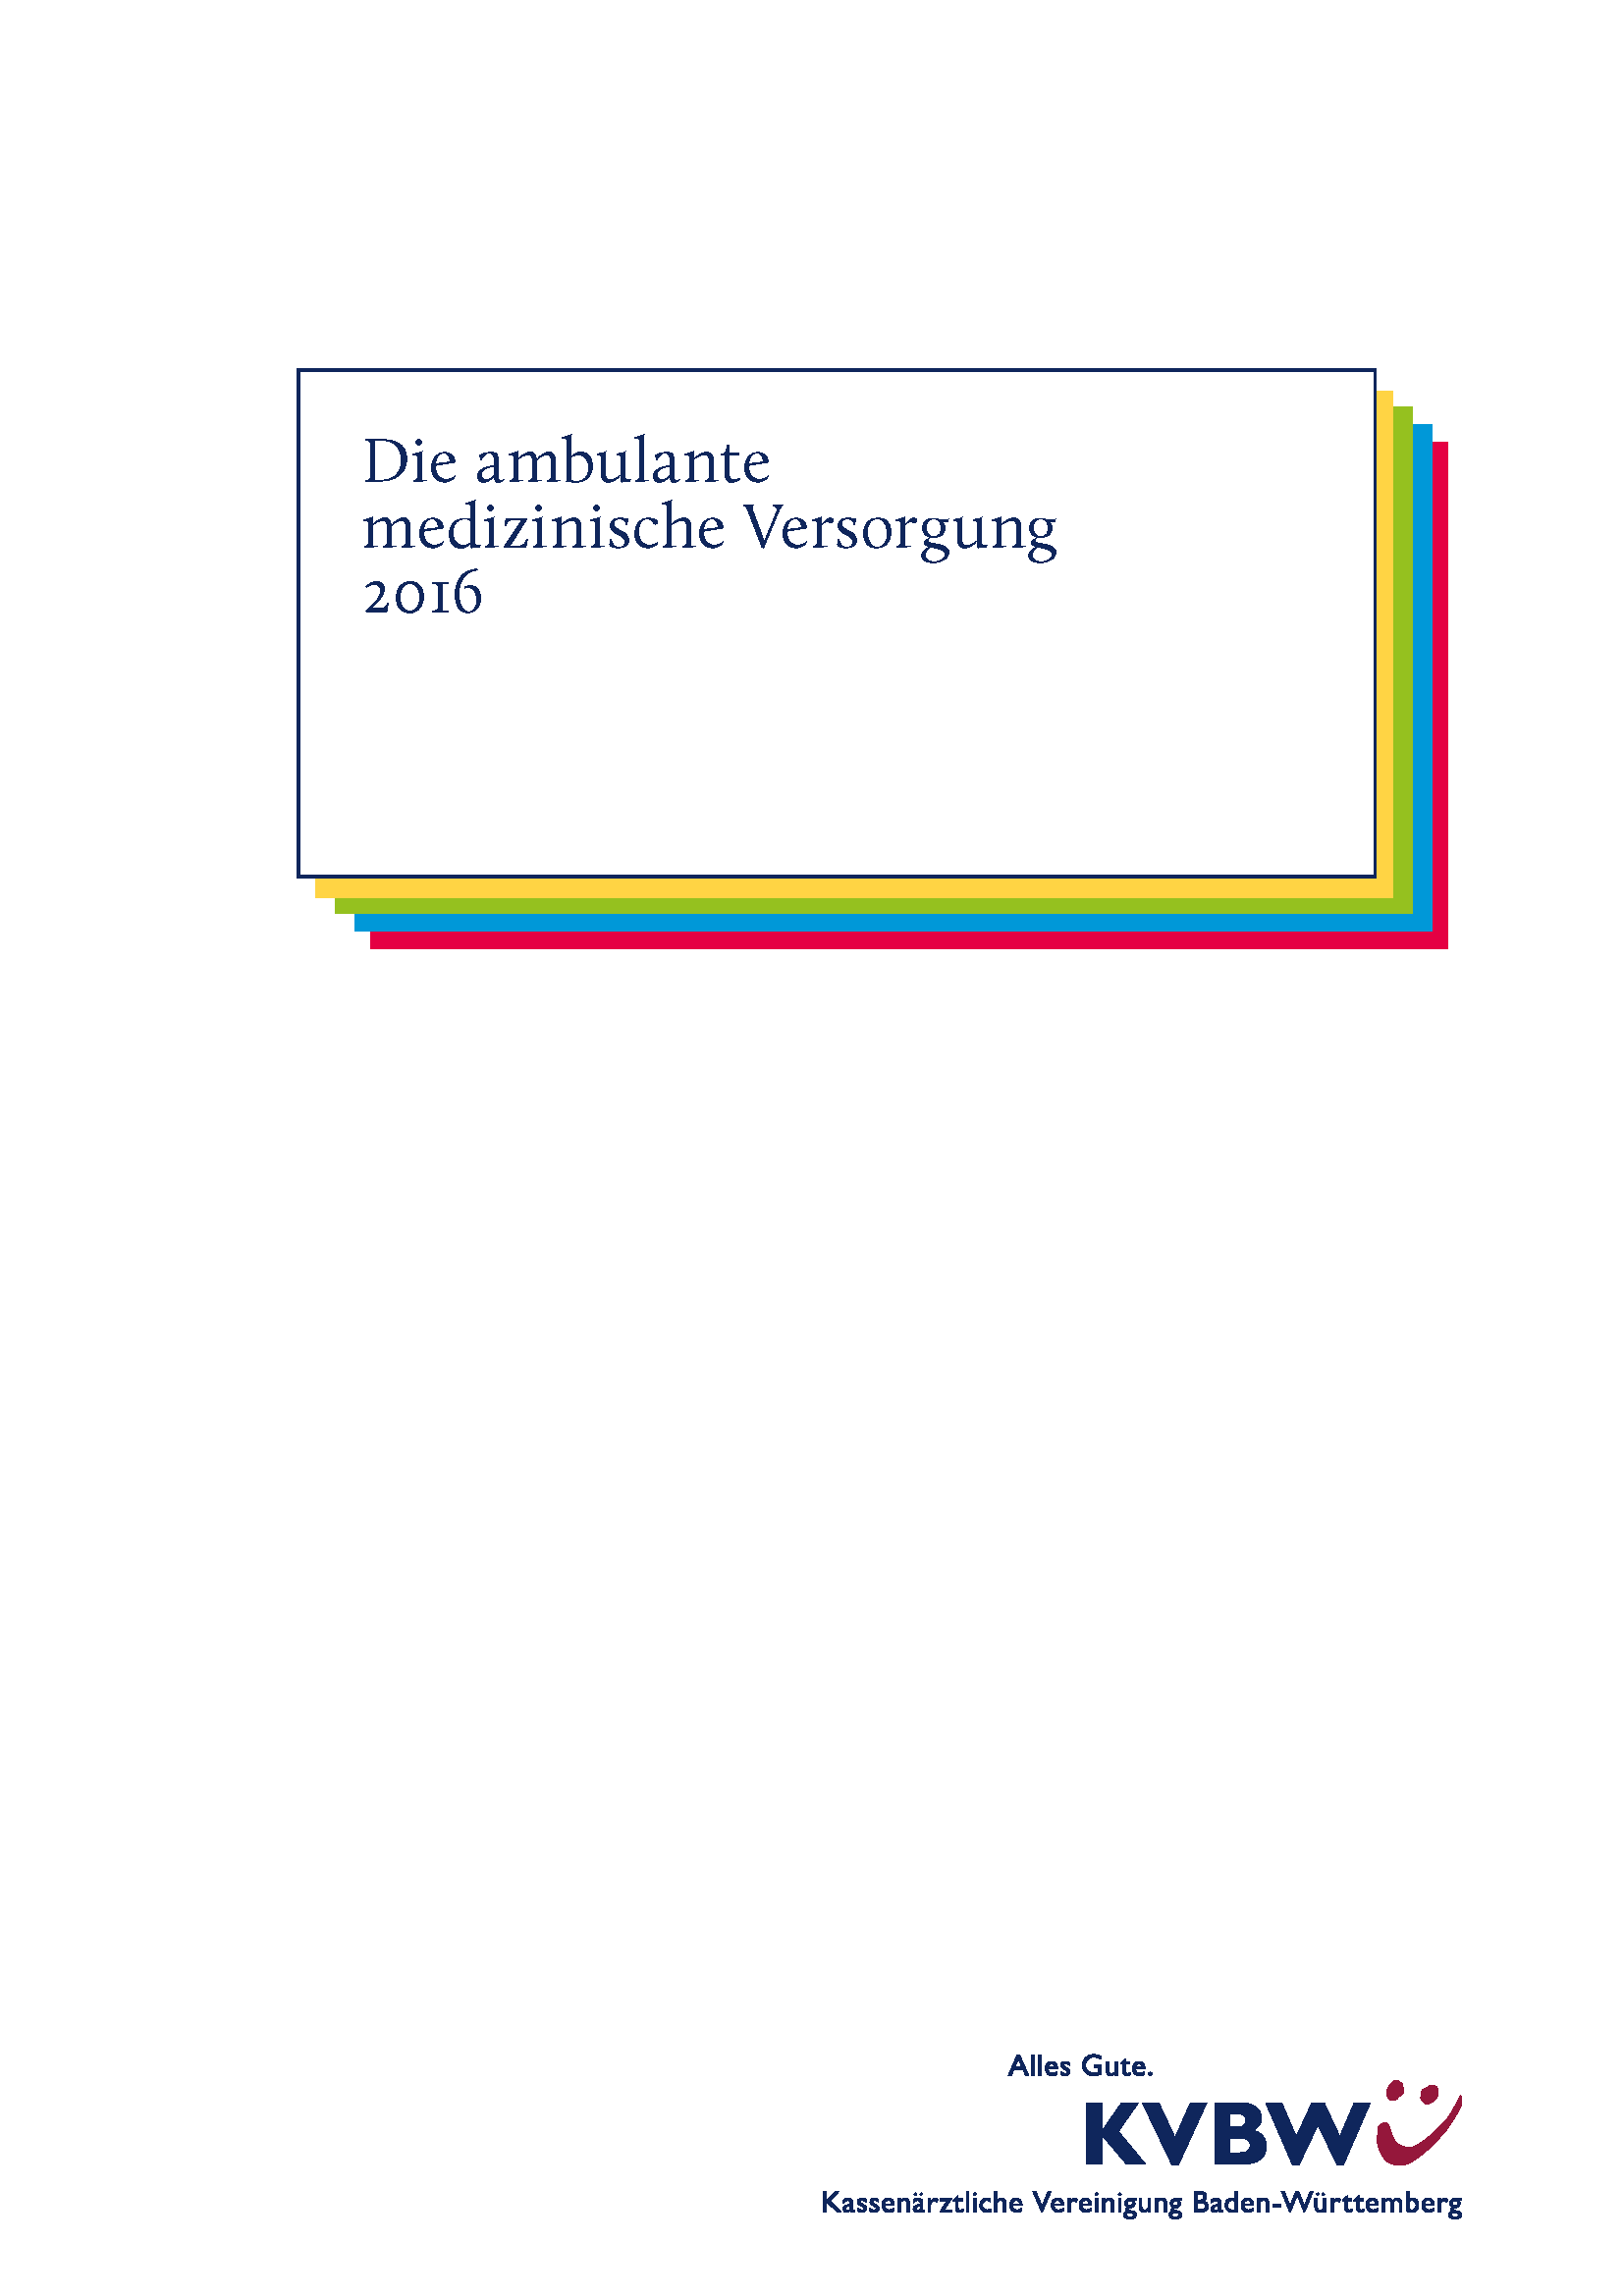 Abbildung Publikation Die ambulante medizinische Versorgung 2016 (Versorgungs- und Qualitätsbericht)